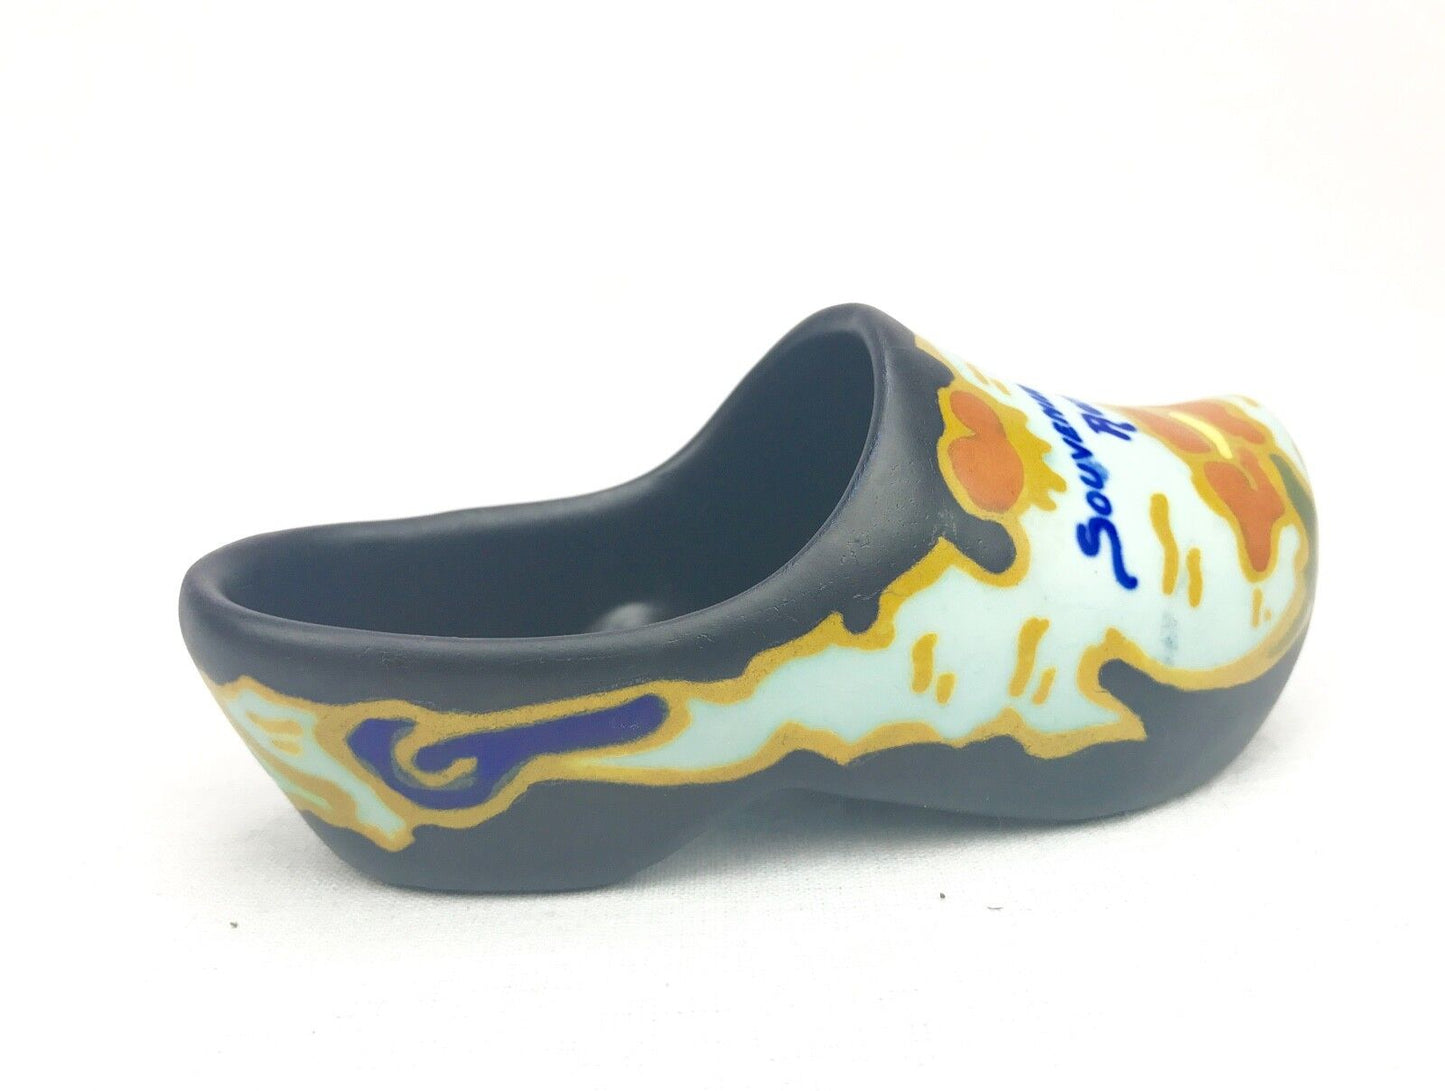 Gouda Pottery / Vase / Shoe / Bowl / Art Deco Style / Brown / Yellow / Orange